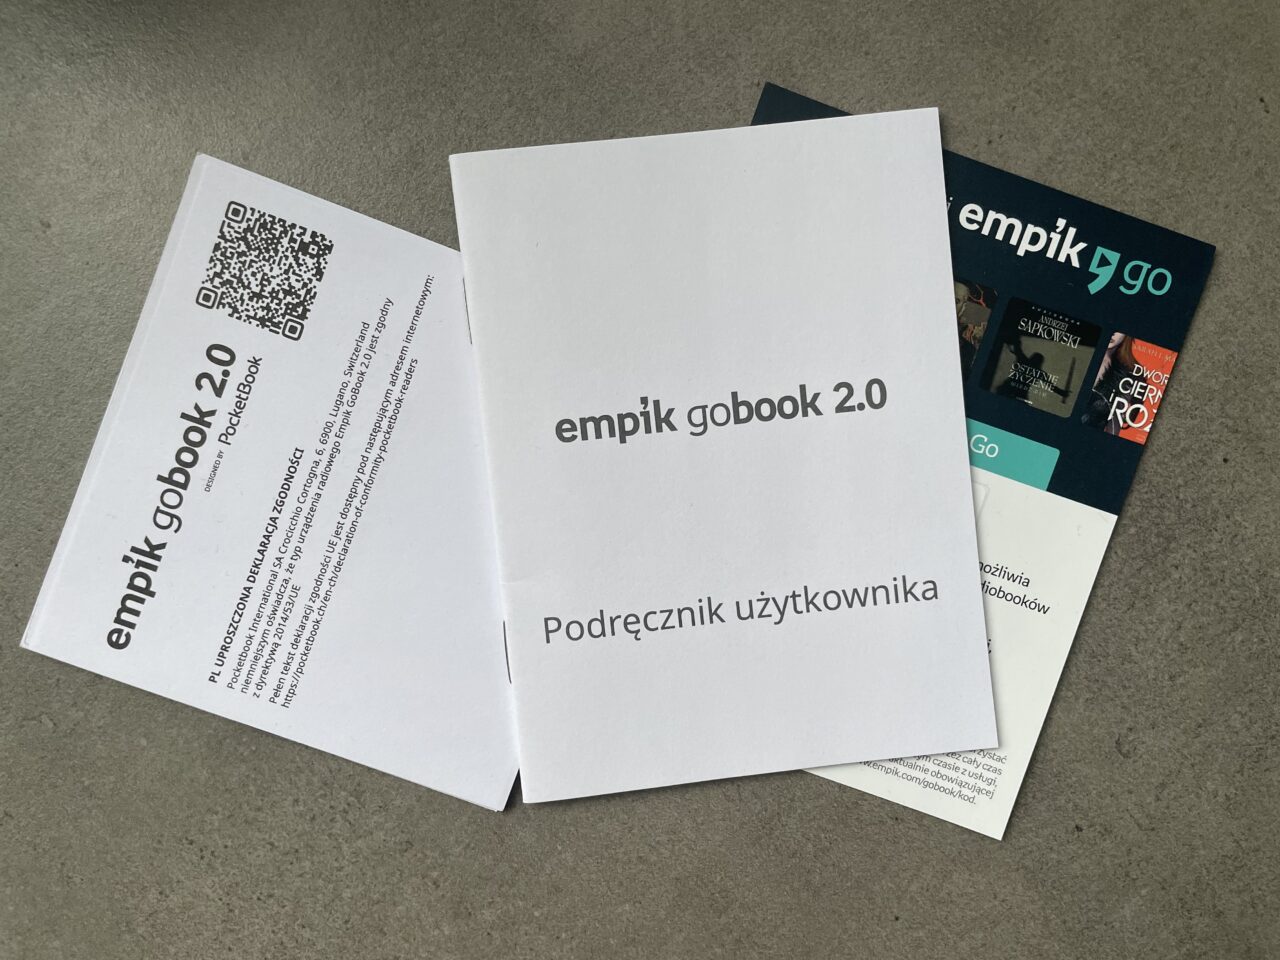 Instrukcja użytkownika empik gobook 2.0 leży obok zapakowanego czytnika ebooków i karty empik go.